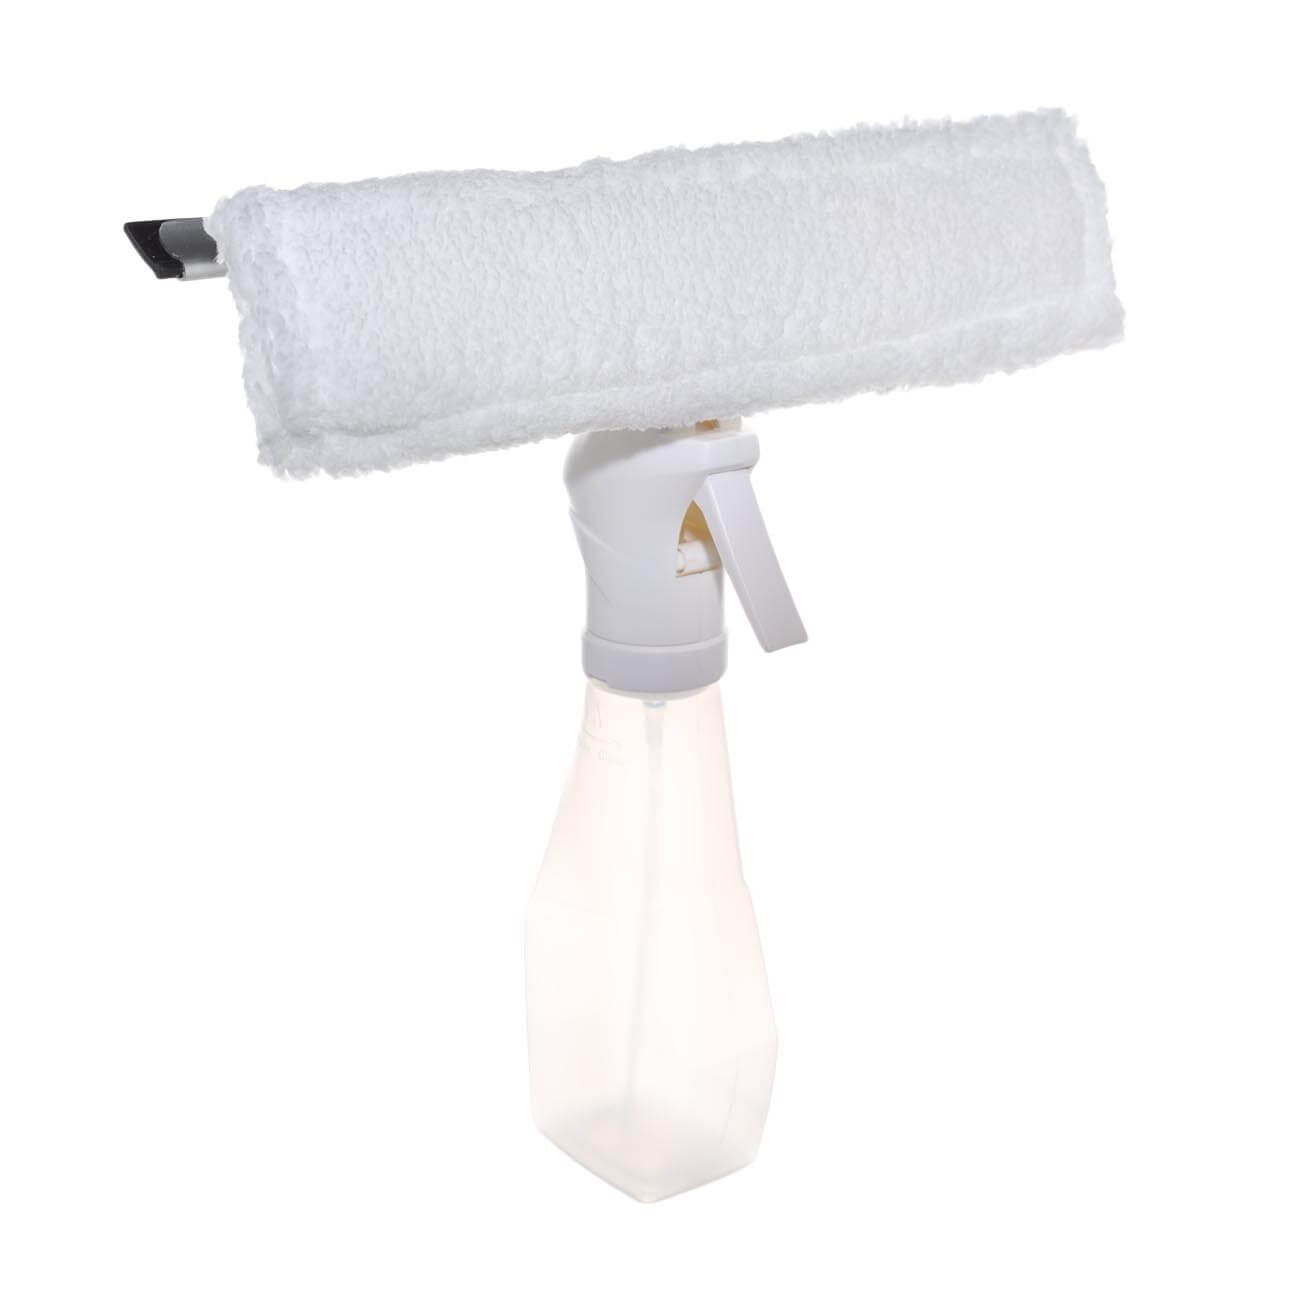 Пульверизатор для мытья окон, 220 мл, с тряпкой и скребком, белый, Clean изображение № 1